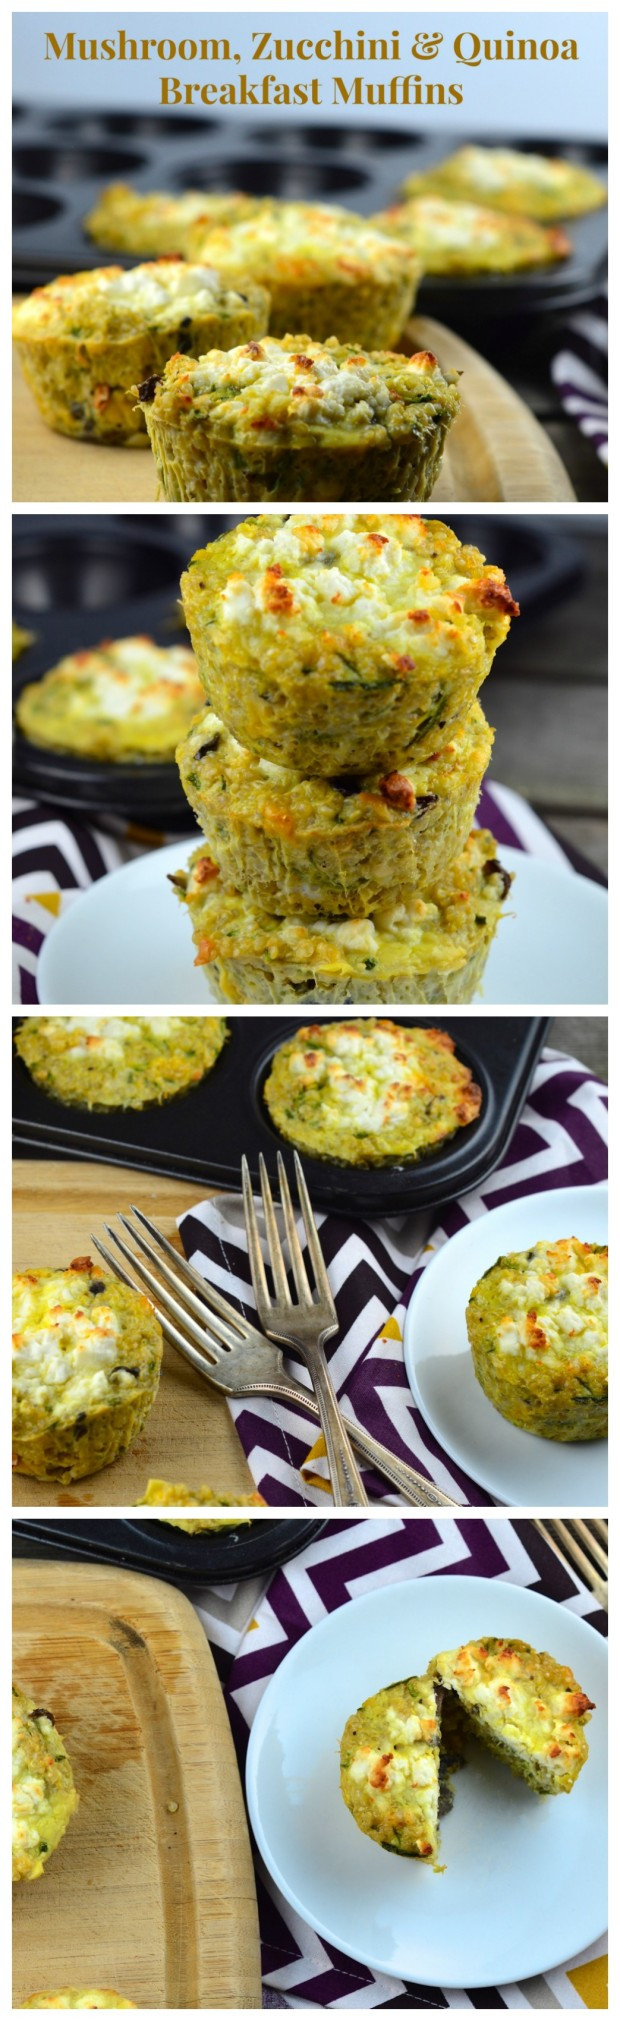 Passover Breakfast Ideas
 Passover Recipes Mushroom Zucchini & Quinoa Breakfast